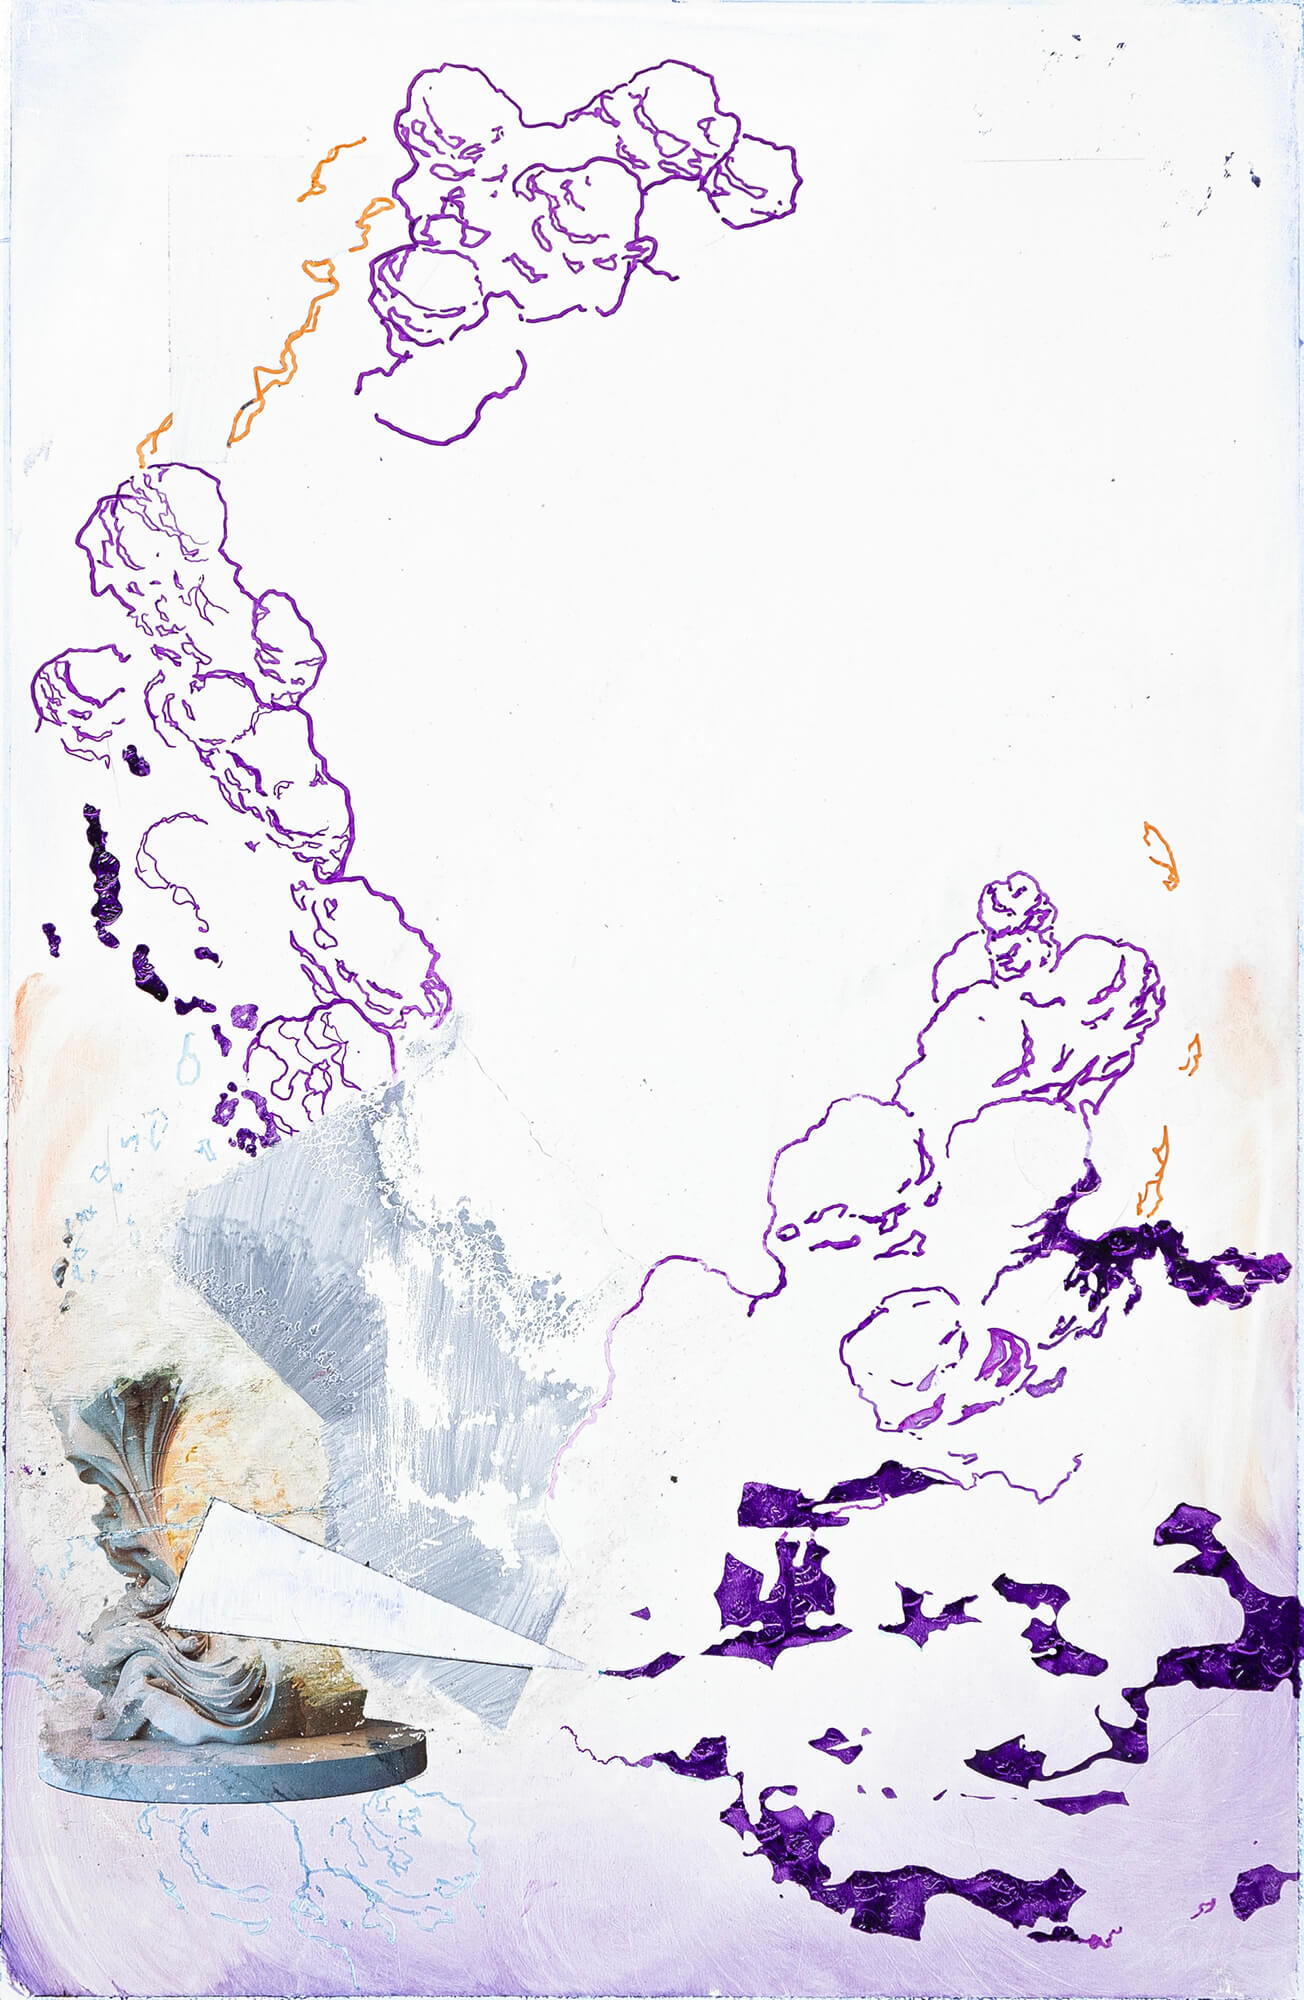 11 - Série AKM-HMR - Résidence Issoudun Huile et feutre sur tableau blanc effaçable 40 x 60 cm 2023 - Crédit photo ©Thomas Greffeuille